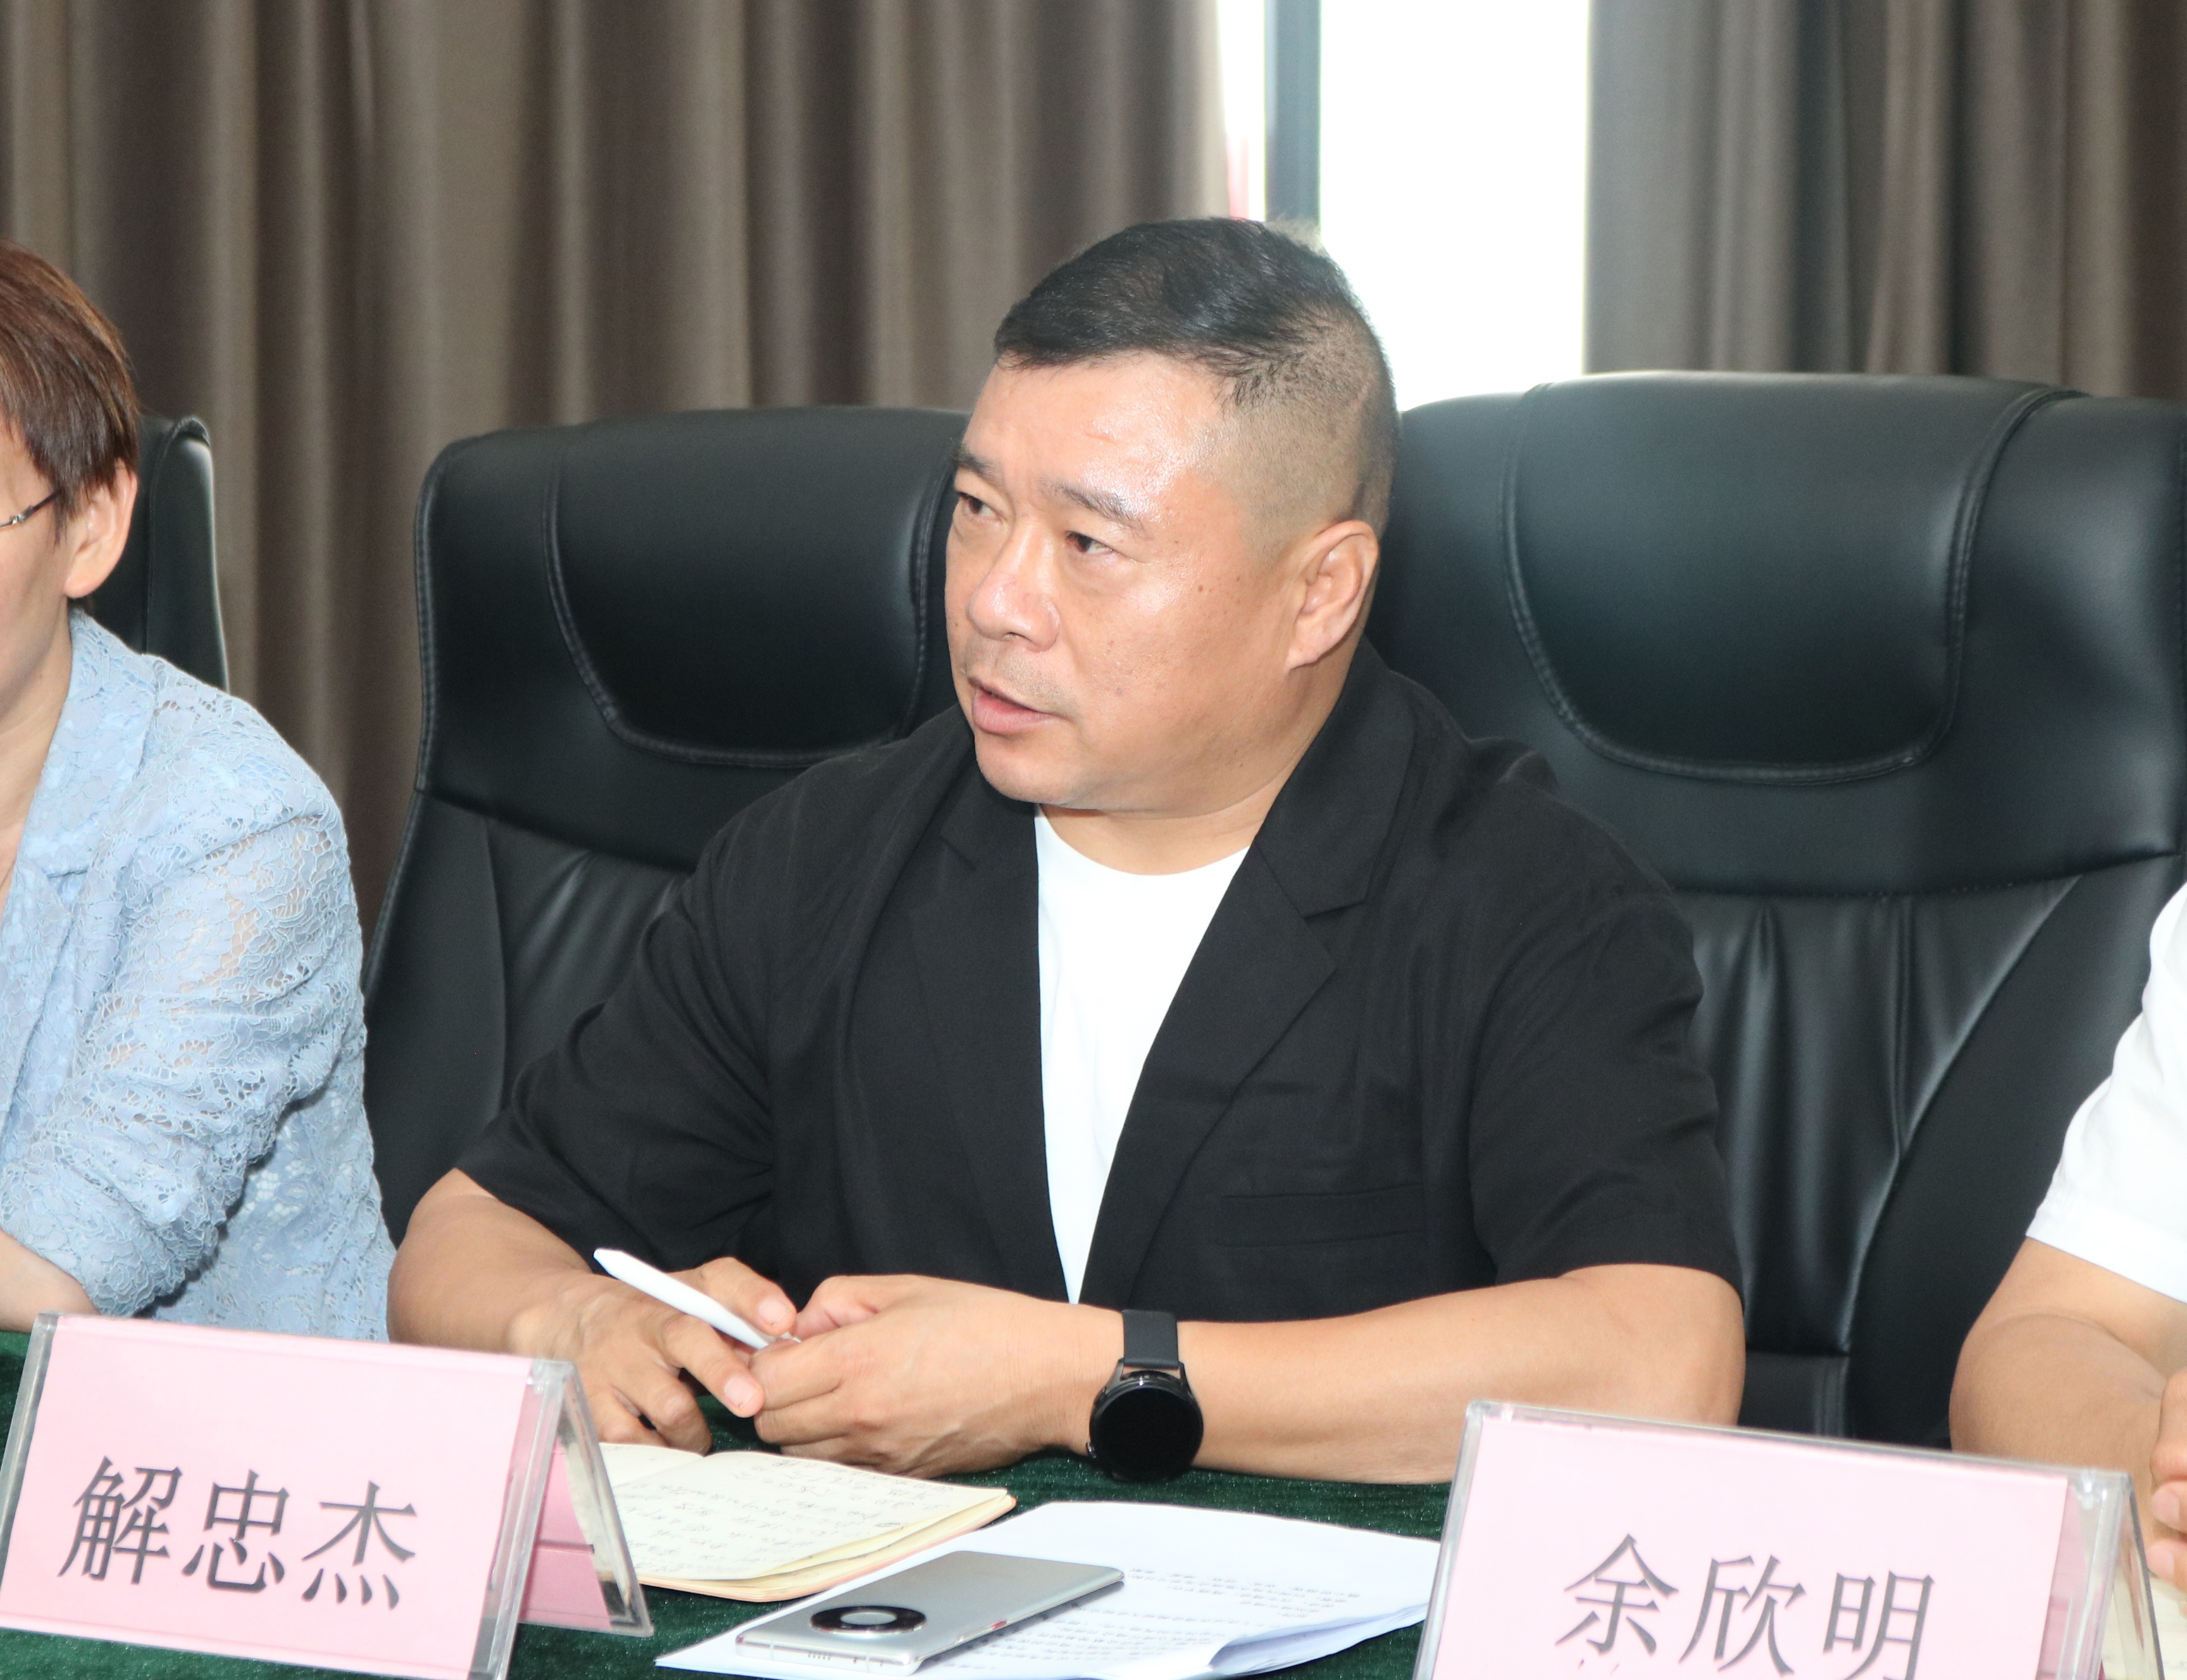 解家河南菜创始人解忠杰被提名为郑州市商丘商会新一届会长候选人